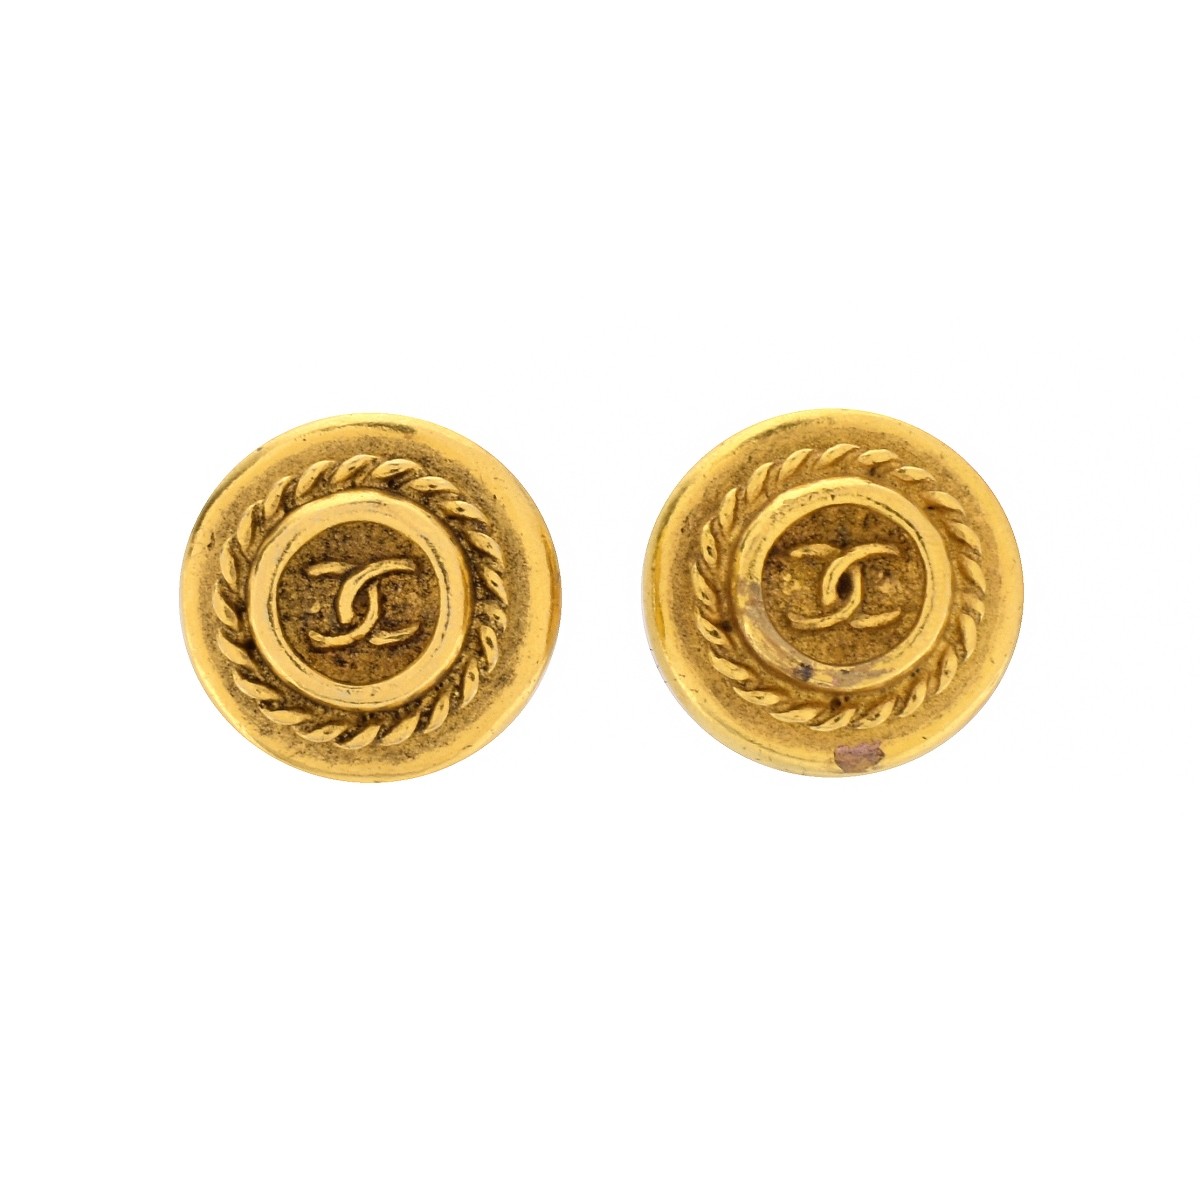 Pair of Chanel Monogrammed Earrings